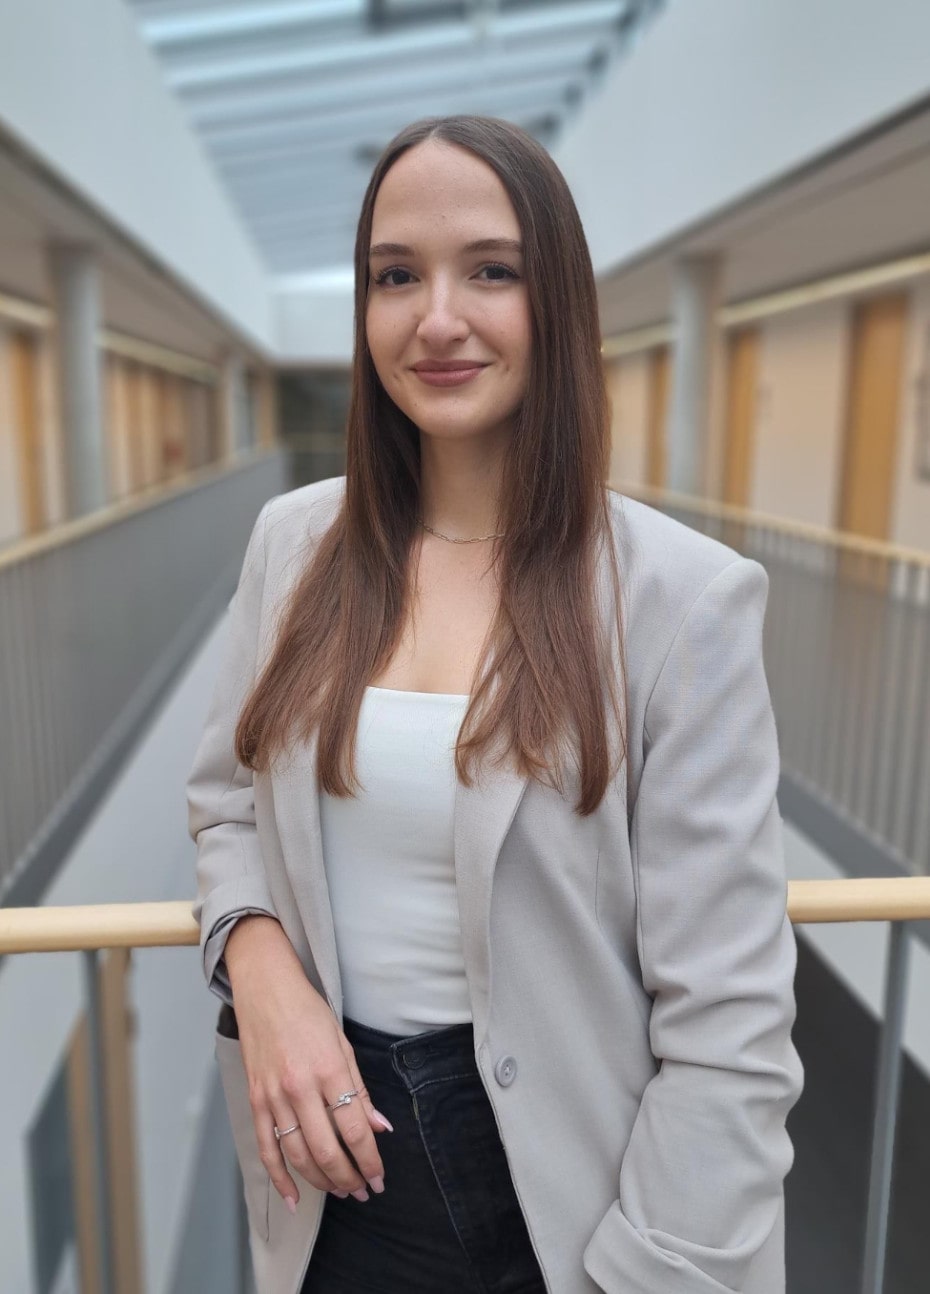 Romina Lörzing, Studiengangsbetreuerin des M.A. Umwelt, Klima und Gesundheit